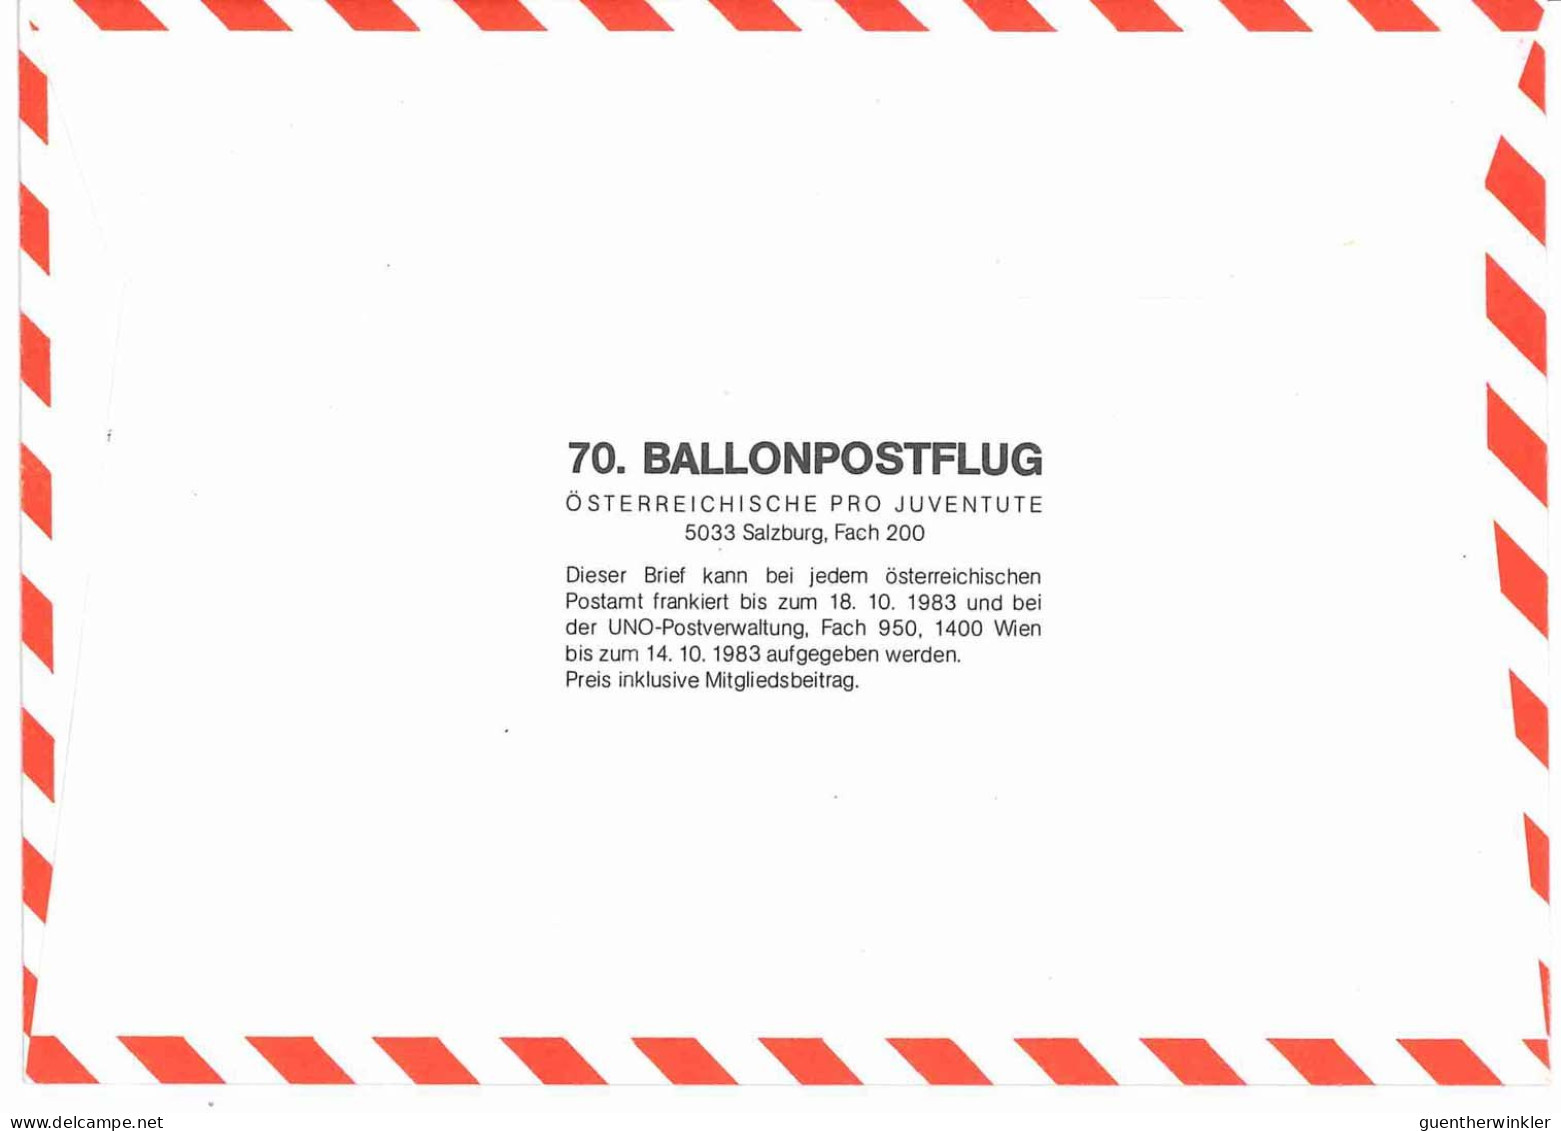 Regulärer Ballonpostflug Nr. 70a Der Pro Juventute [RBP70a] - Par Ballon